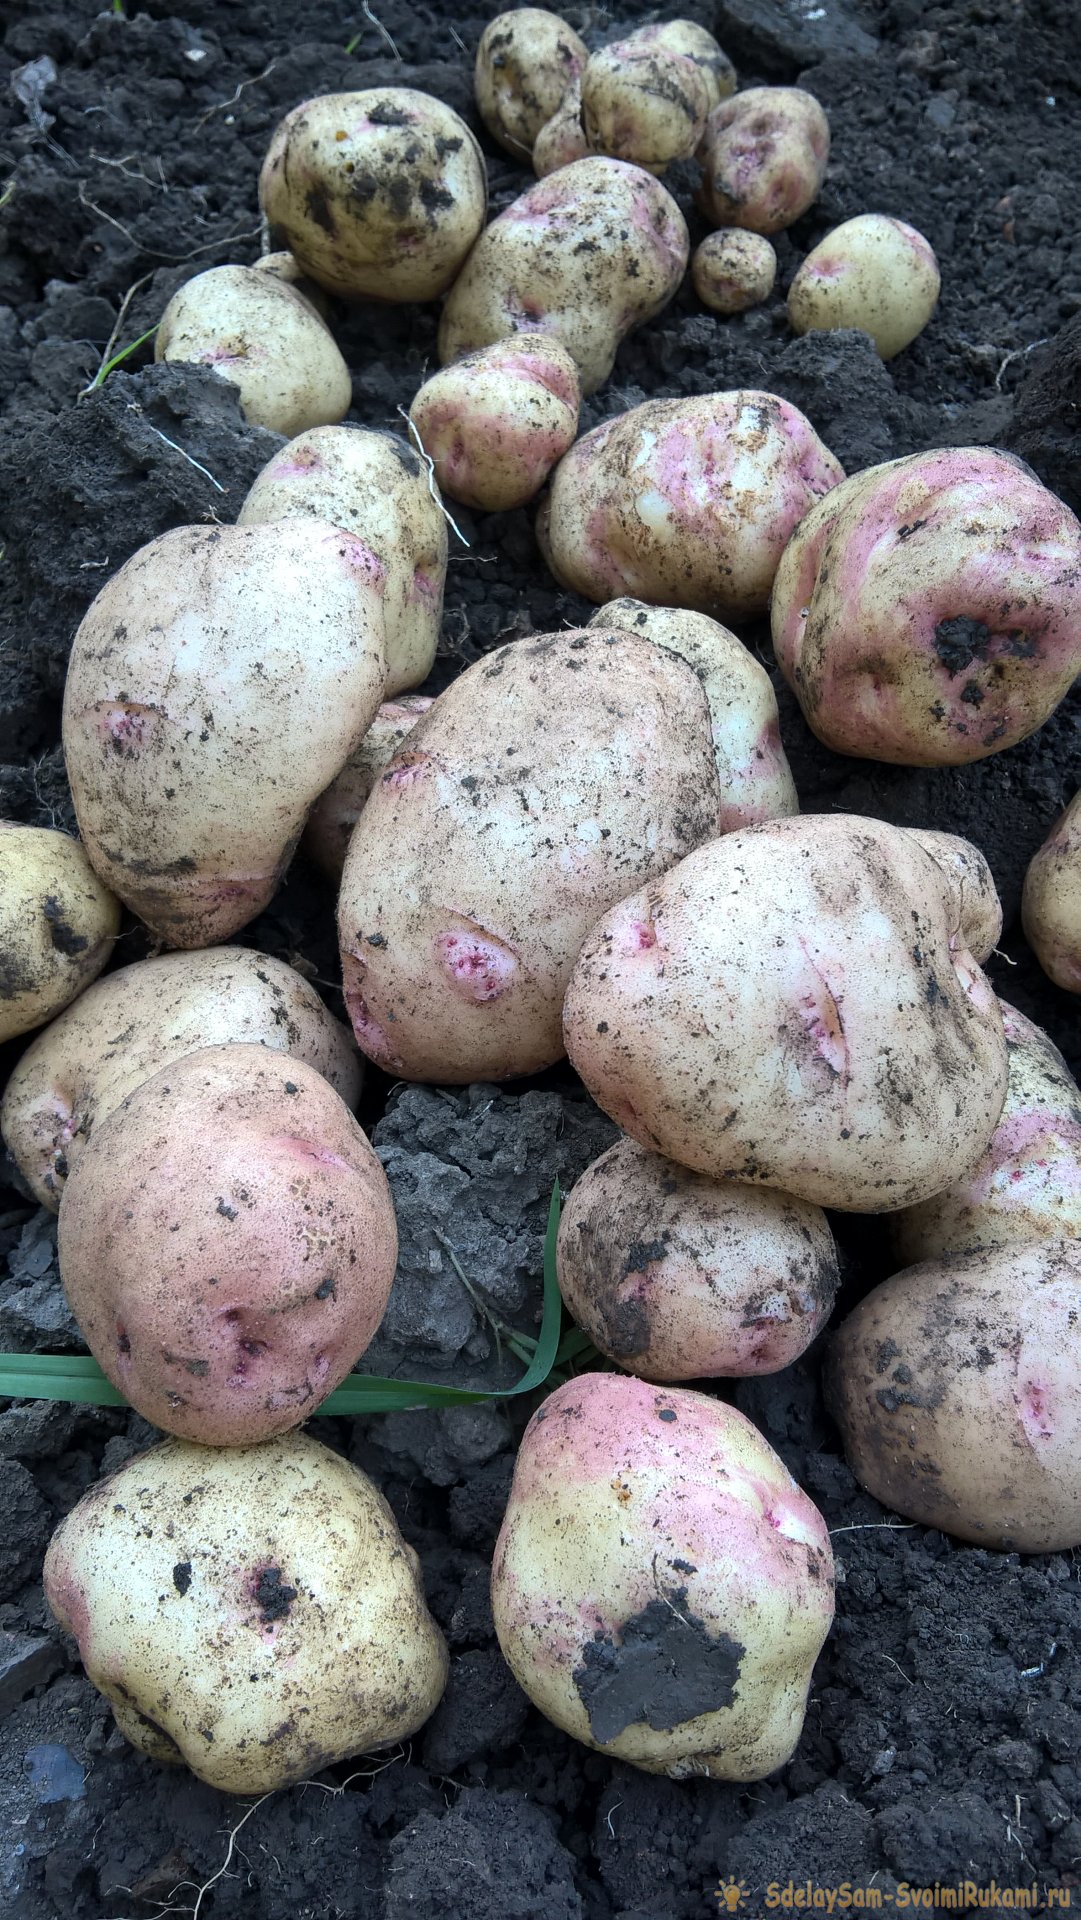 Августовская уборка картофеля. Главное – о предварительной подготовке, правилах выкапывания и секретах зимнего хранения клубней